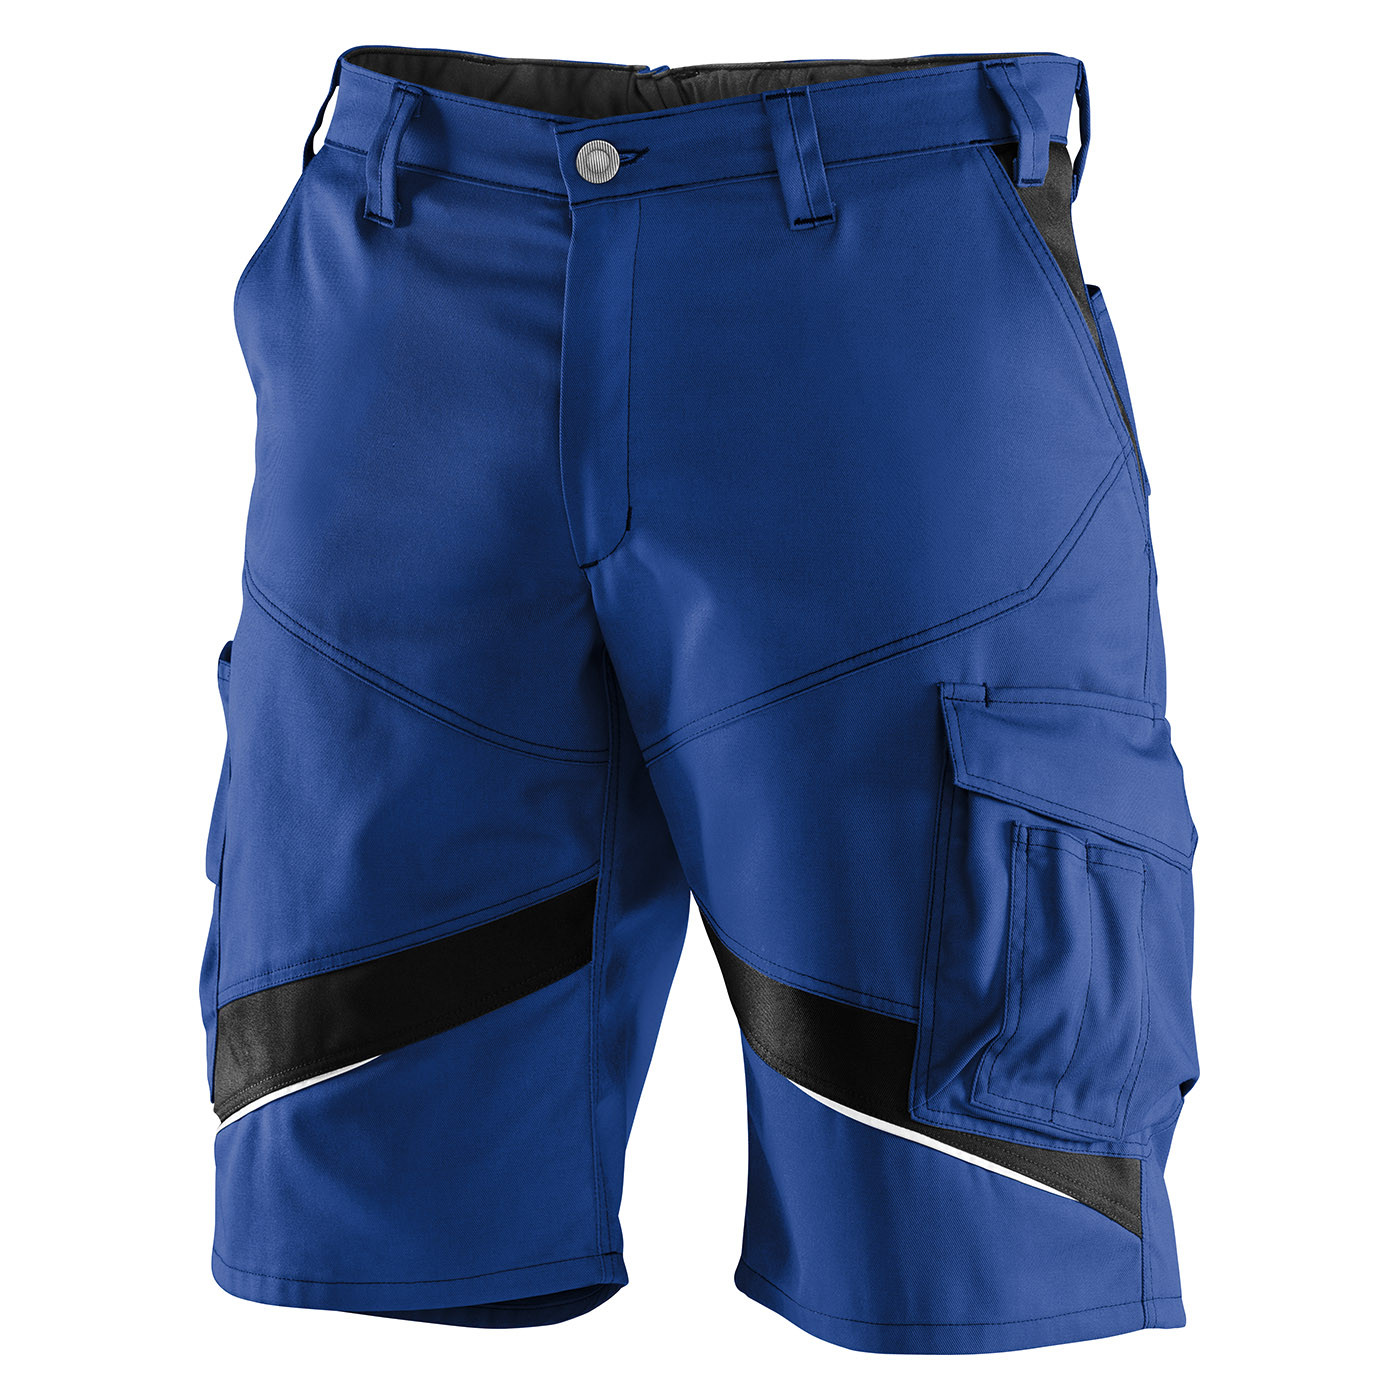 Shorts Activiq, blau-schwarz, Größe 40